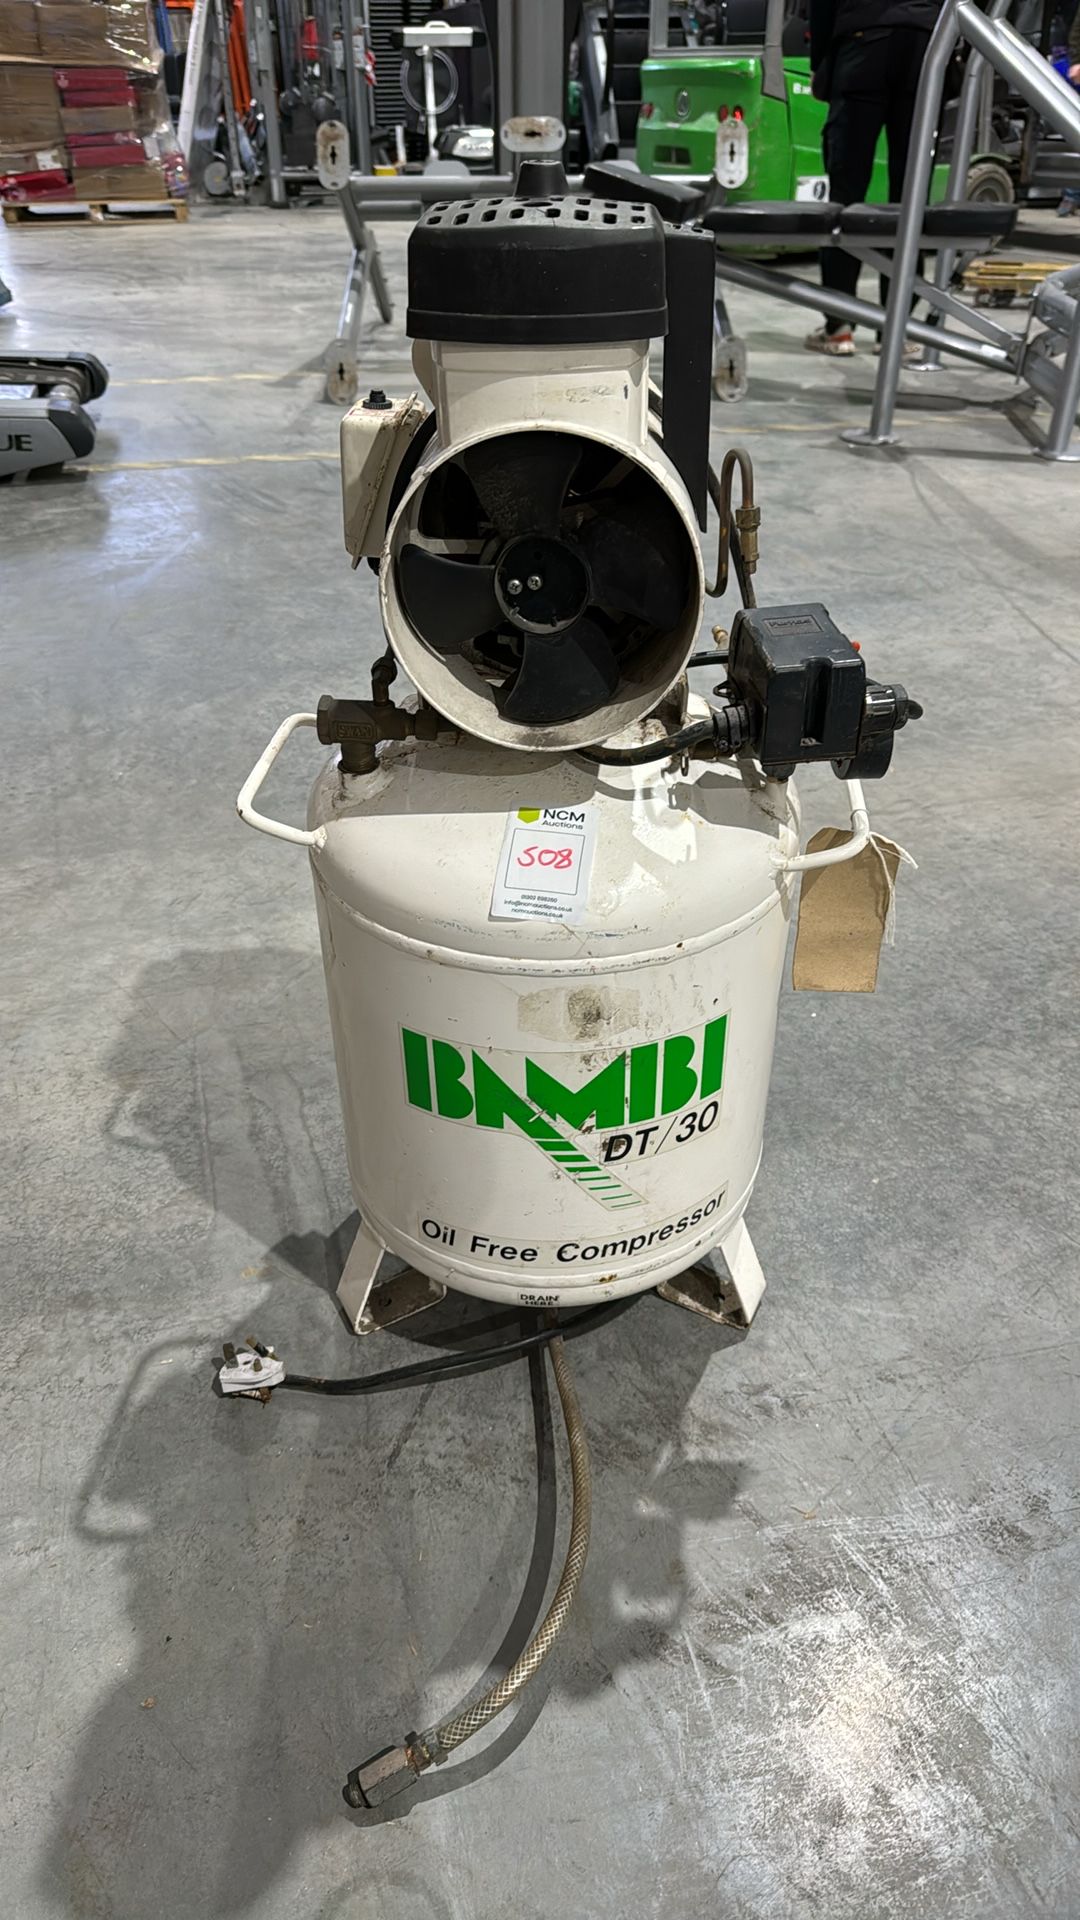 IBNMIBI DT/30 Compressor - NO RESERVE